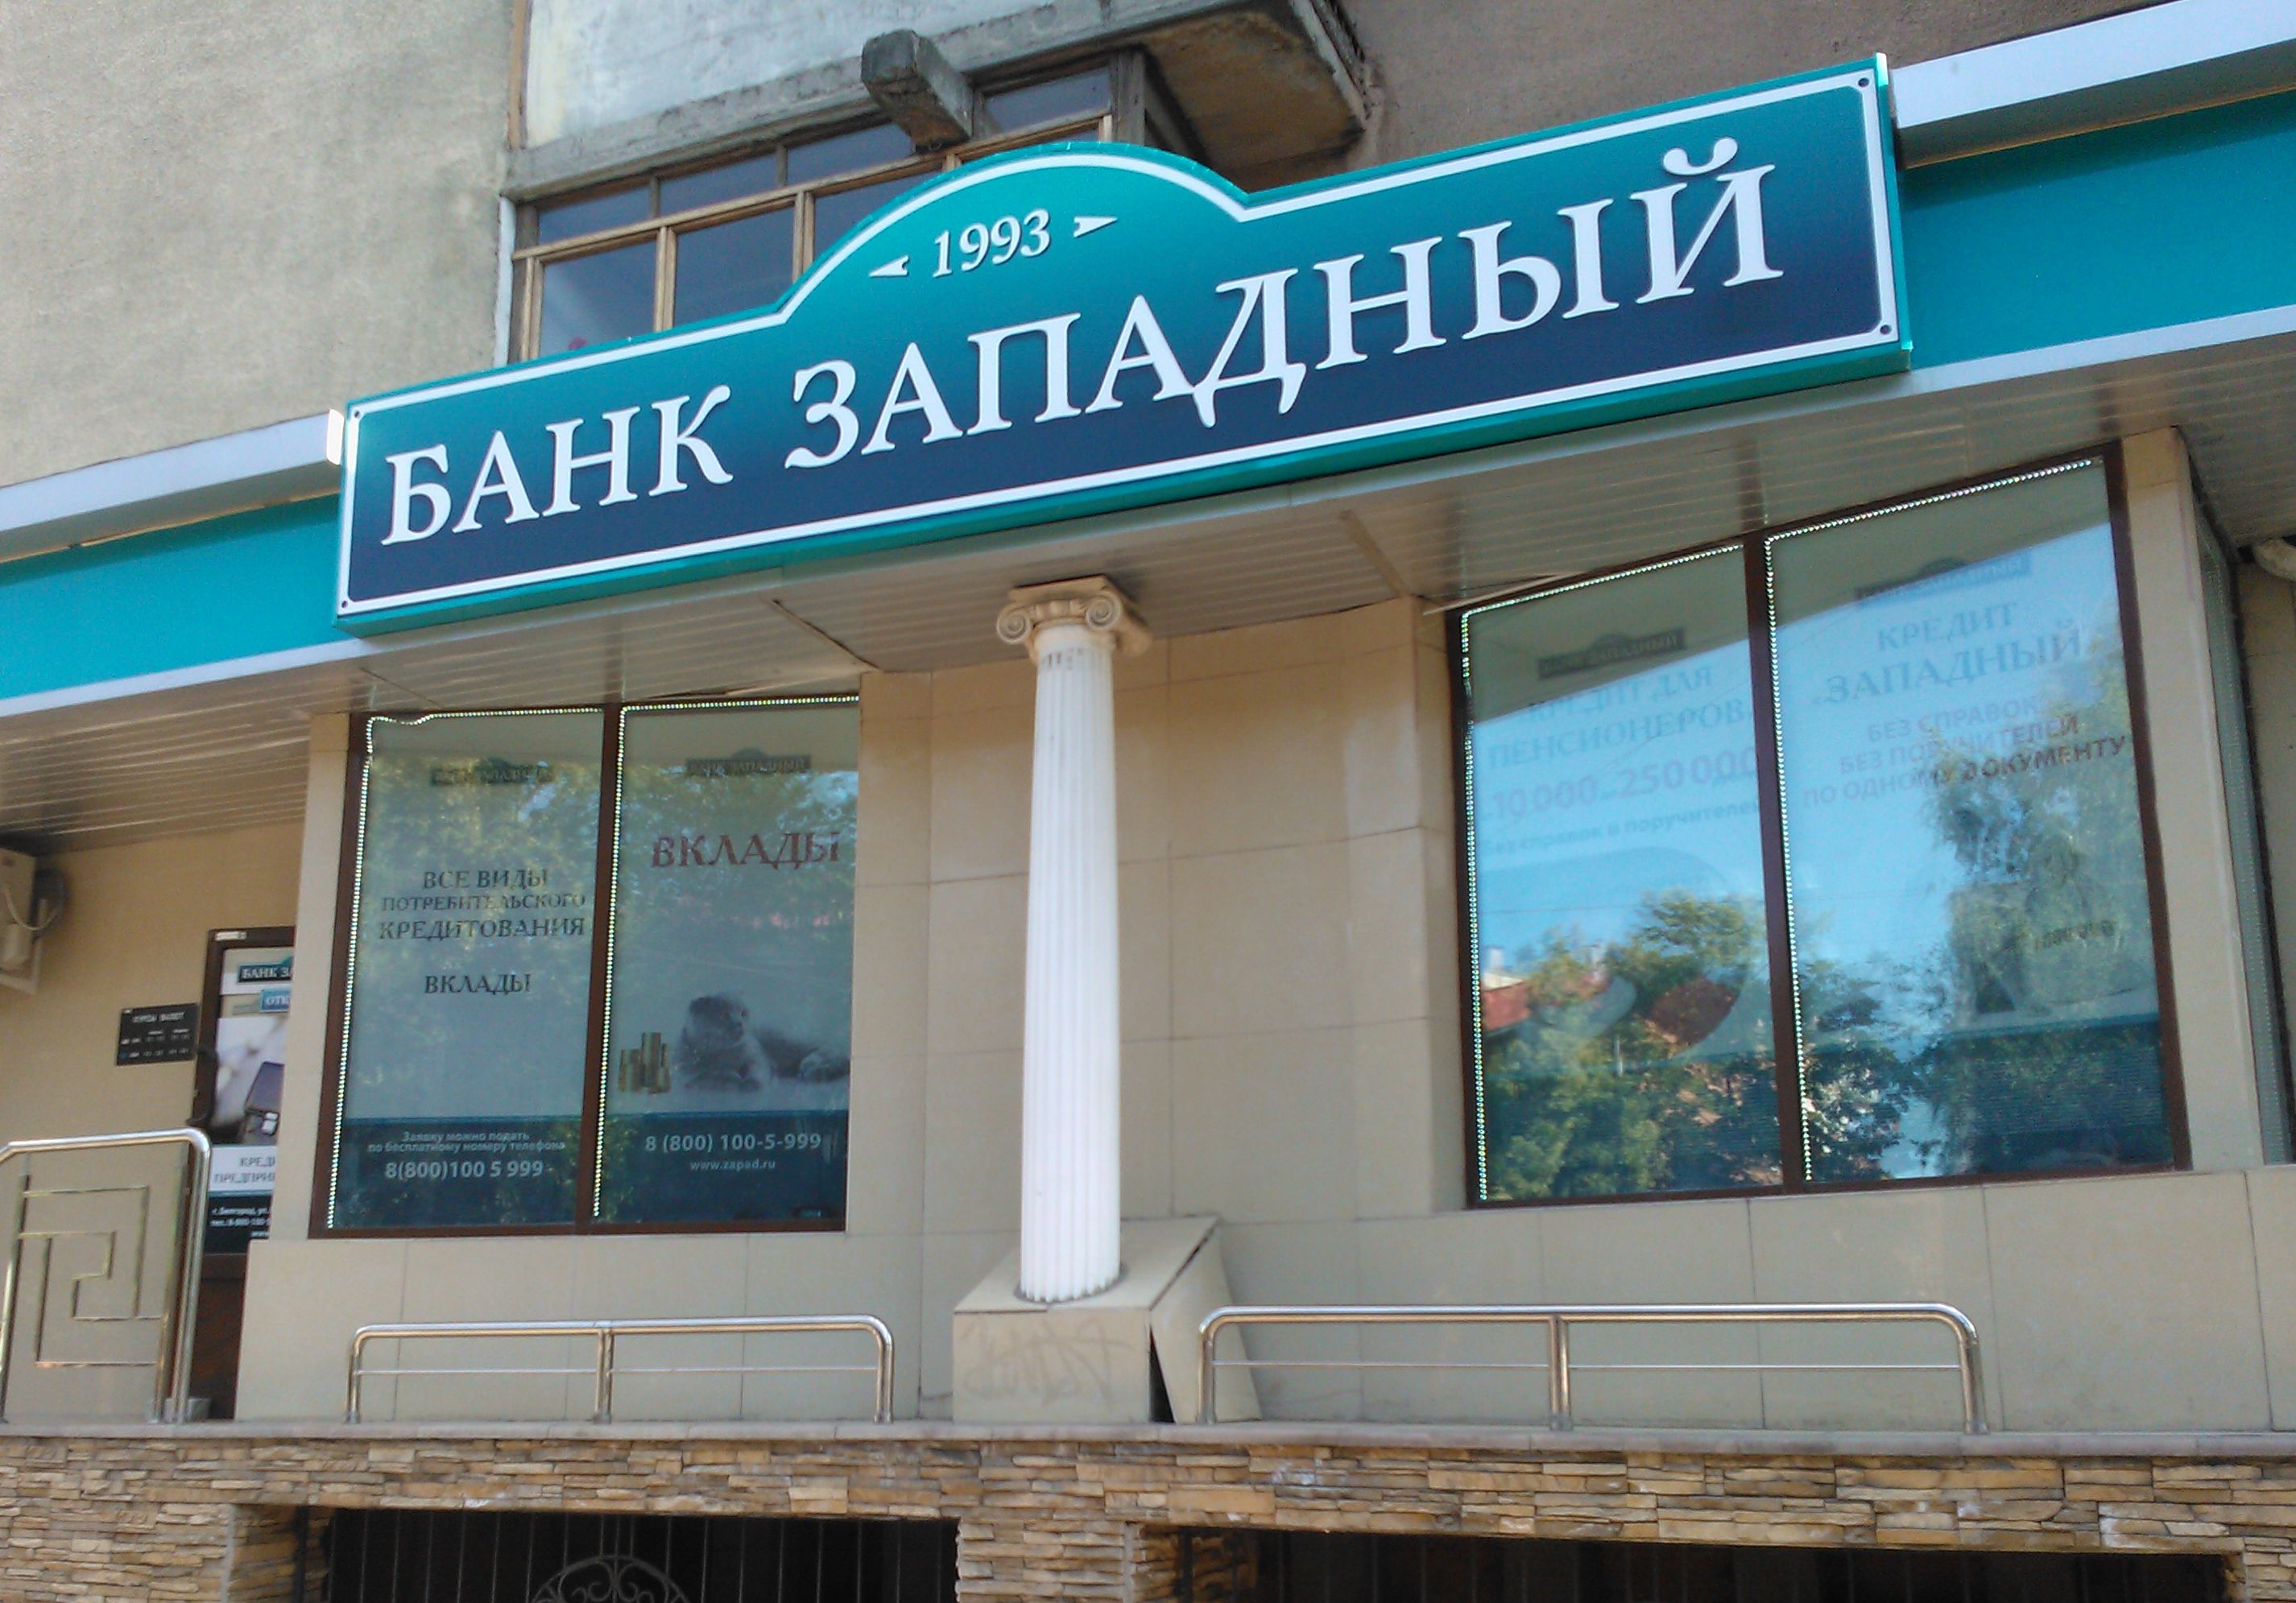 В Белгороде мужчина захватил отделение банка «Западный»